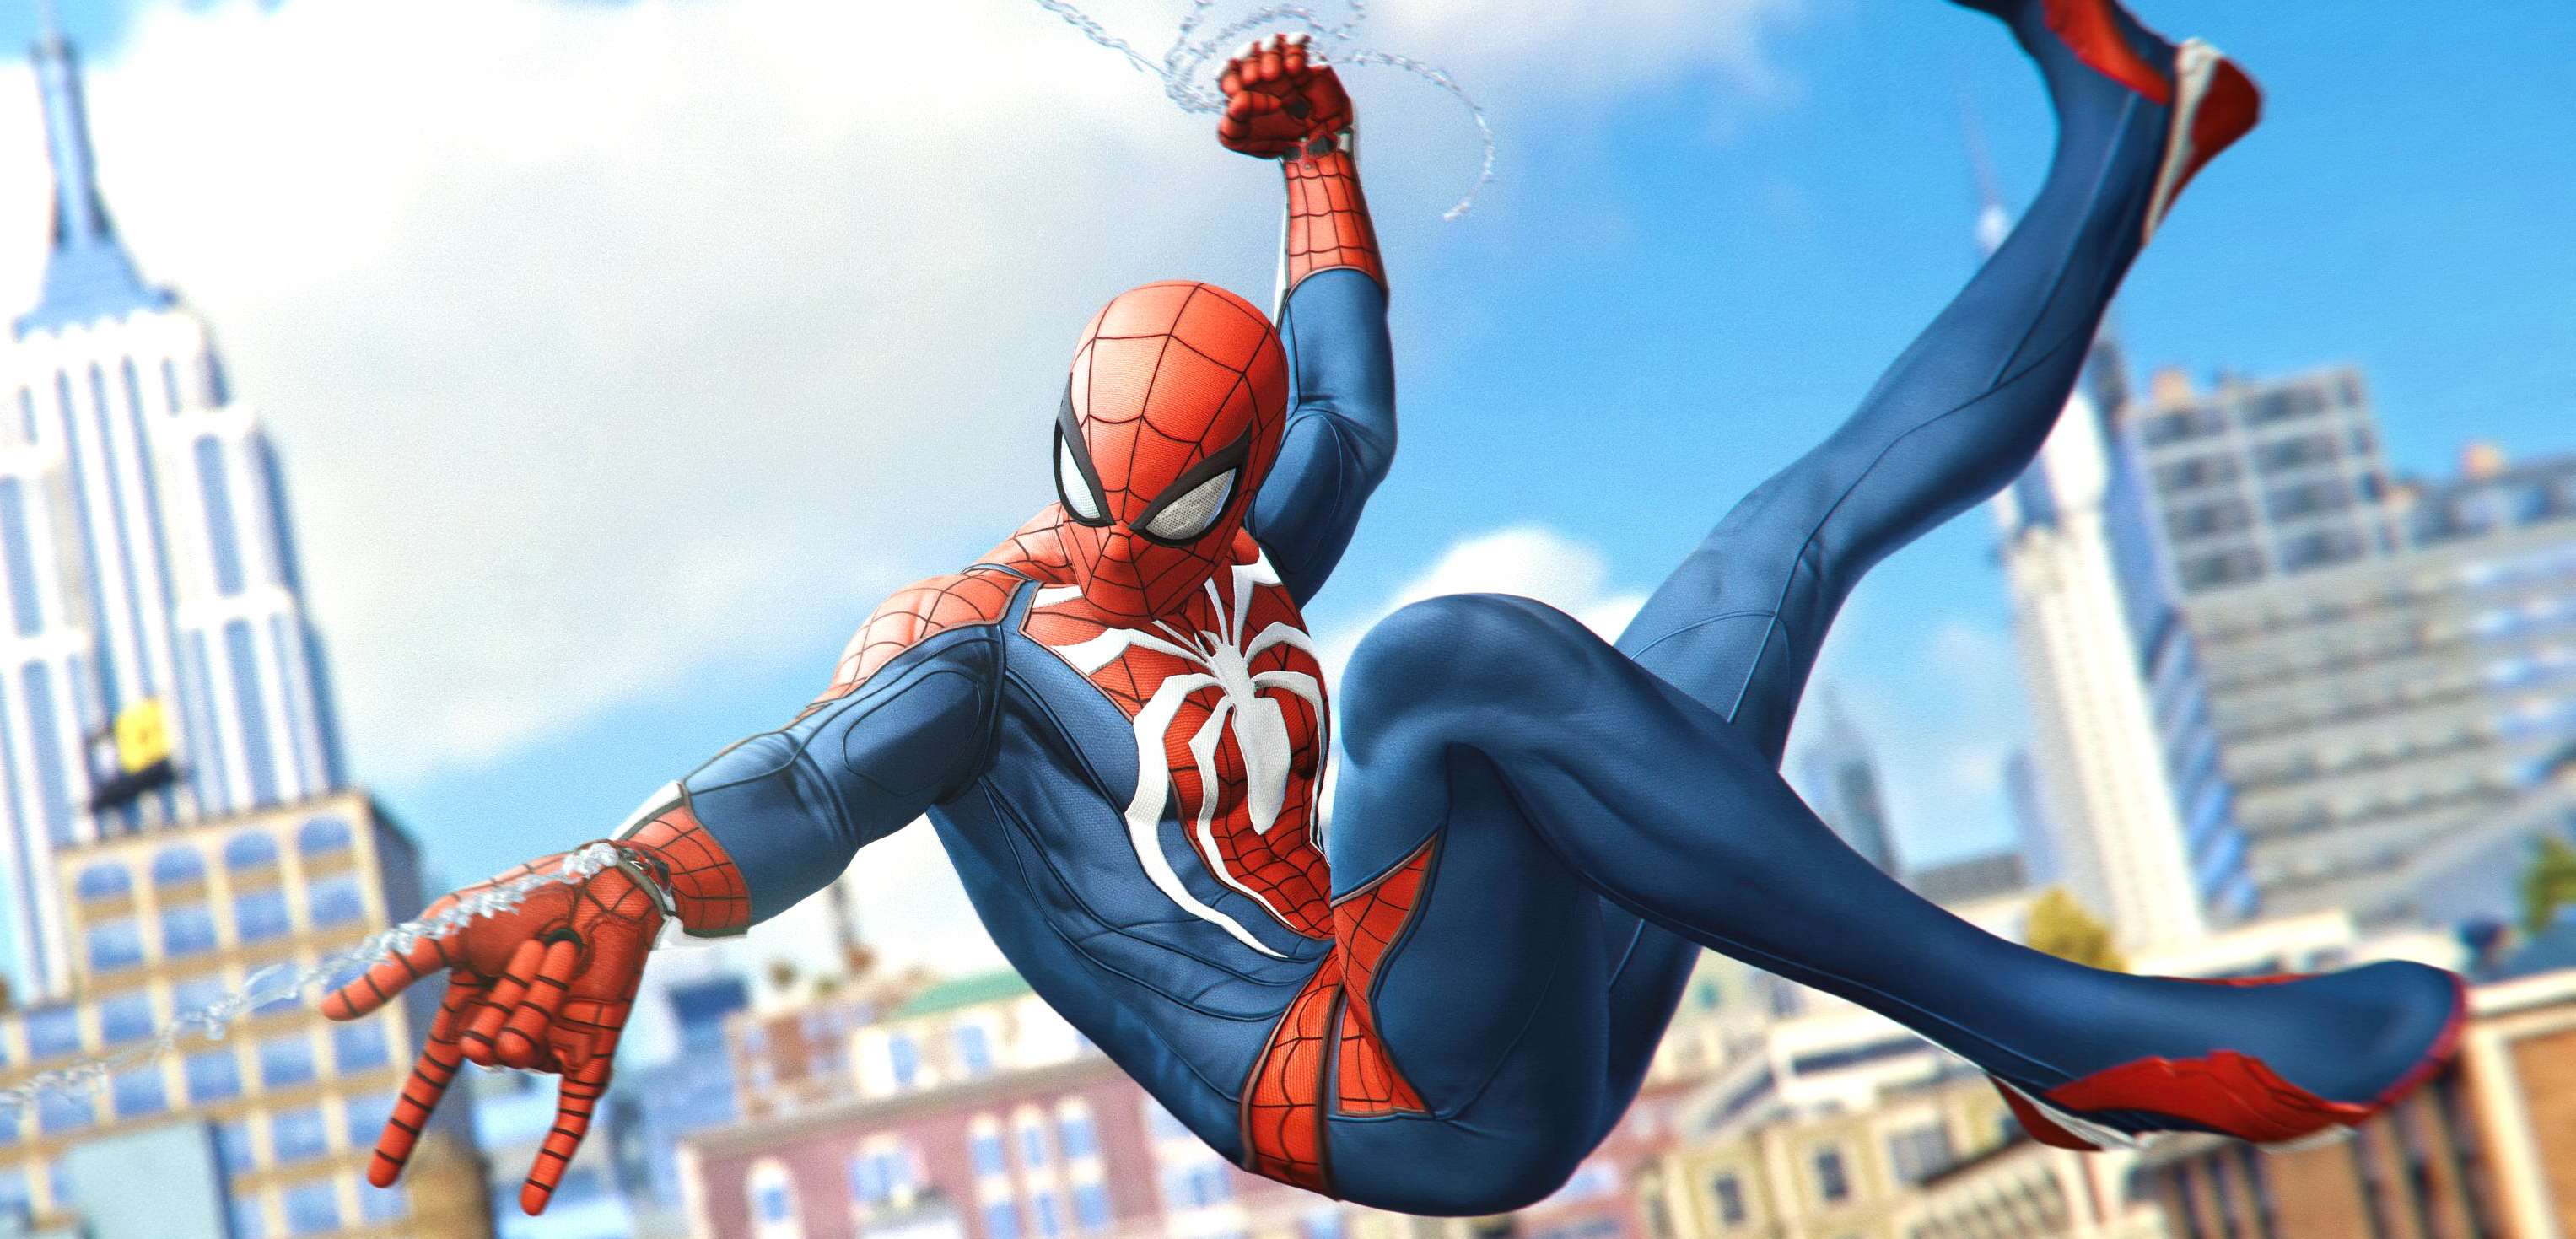 Spider-Man w 4K. Piękne screeny z PS4 Pro